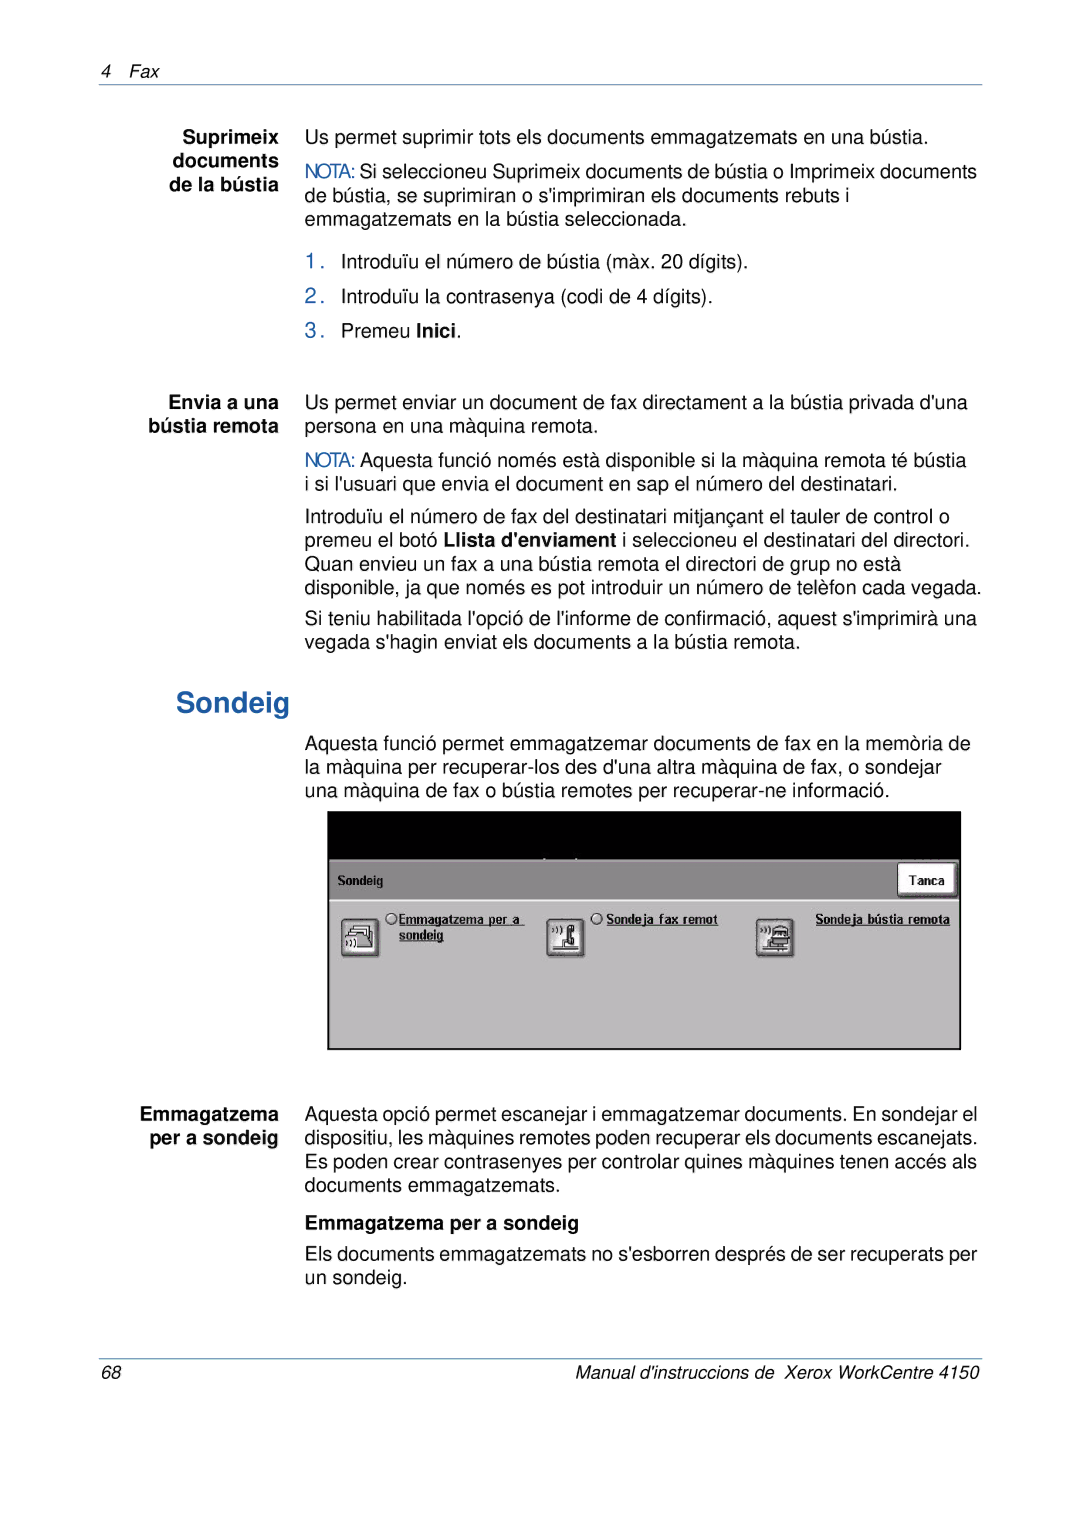 Xerox 5.0 24.03.06 manual Sondeig, Suprimeix documents de la bústia, Emmagatzema per a sondeig 